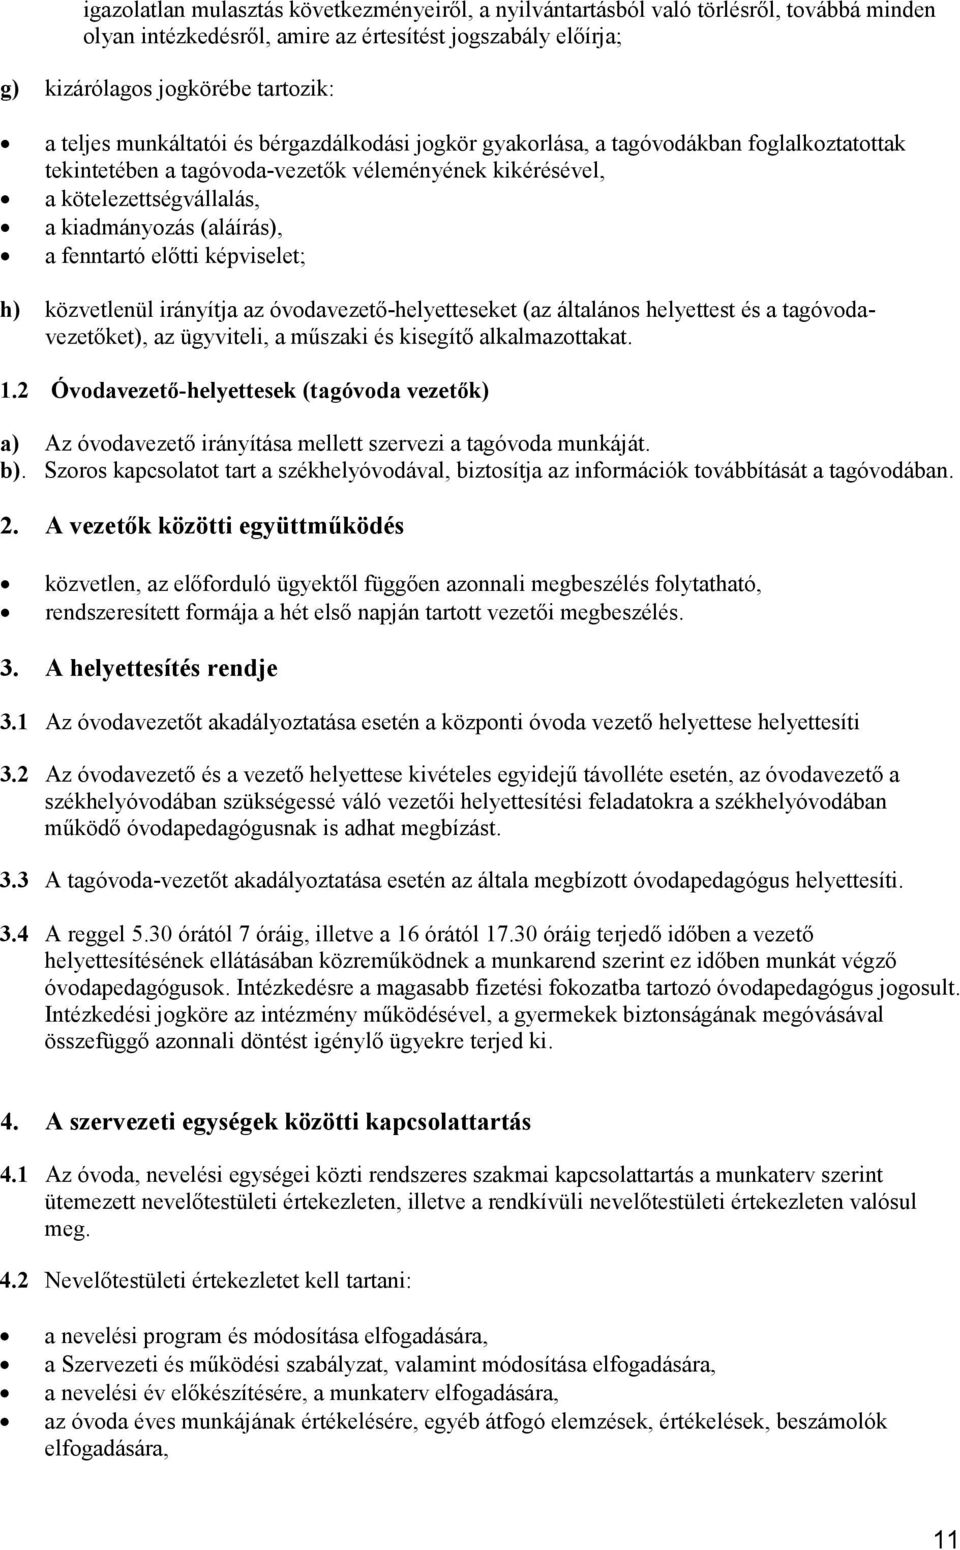 fenntartó elıtti képviselet; h) közvetlenül irányítja az óvodavezetı-helyetteseket (az általános helyettest és a tagóvodavezetıket), az ügyviteli, a mőszaki és kisegítı alkalmazottakat. 1.